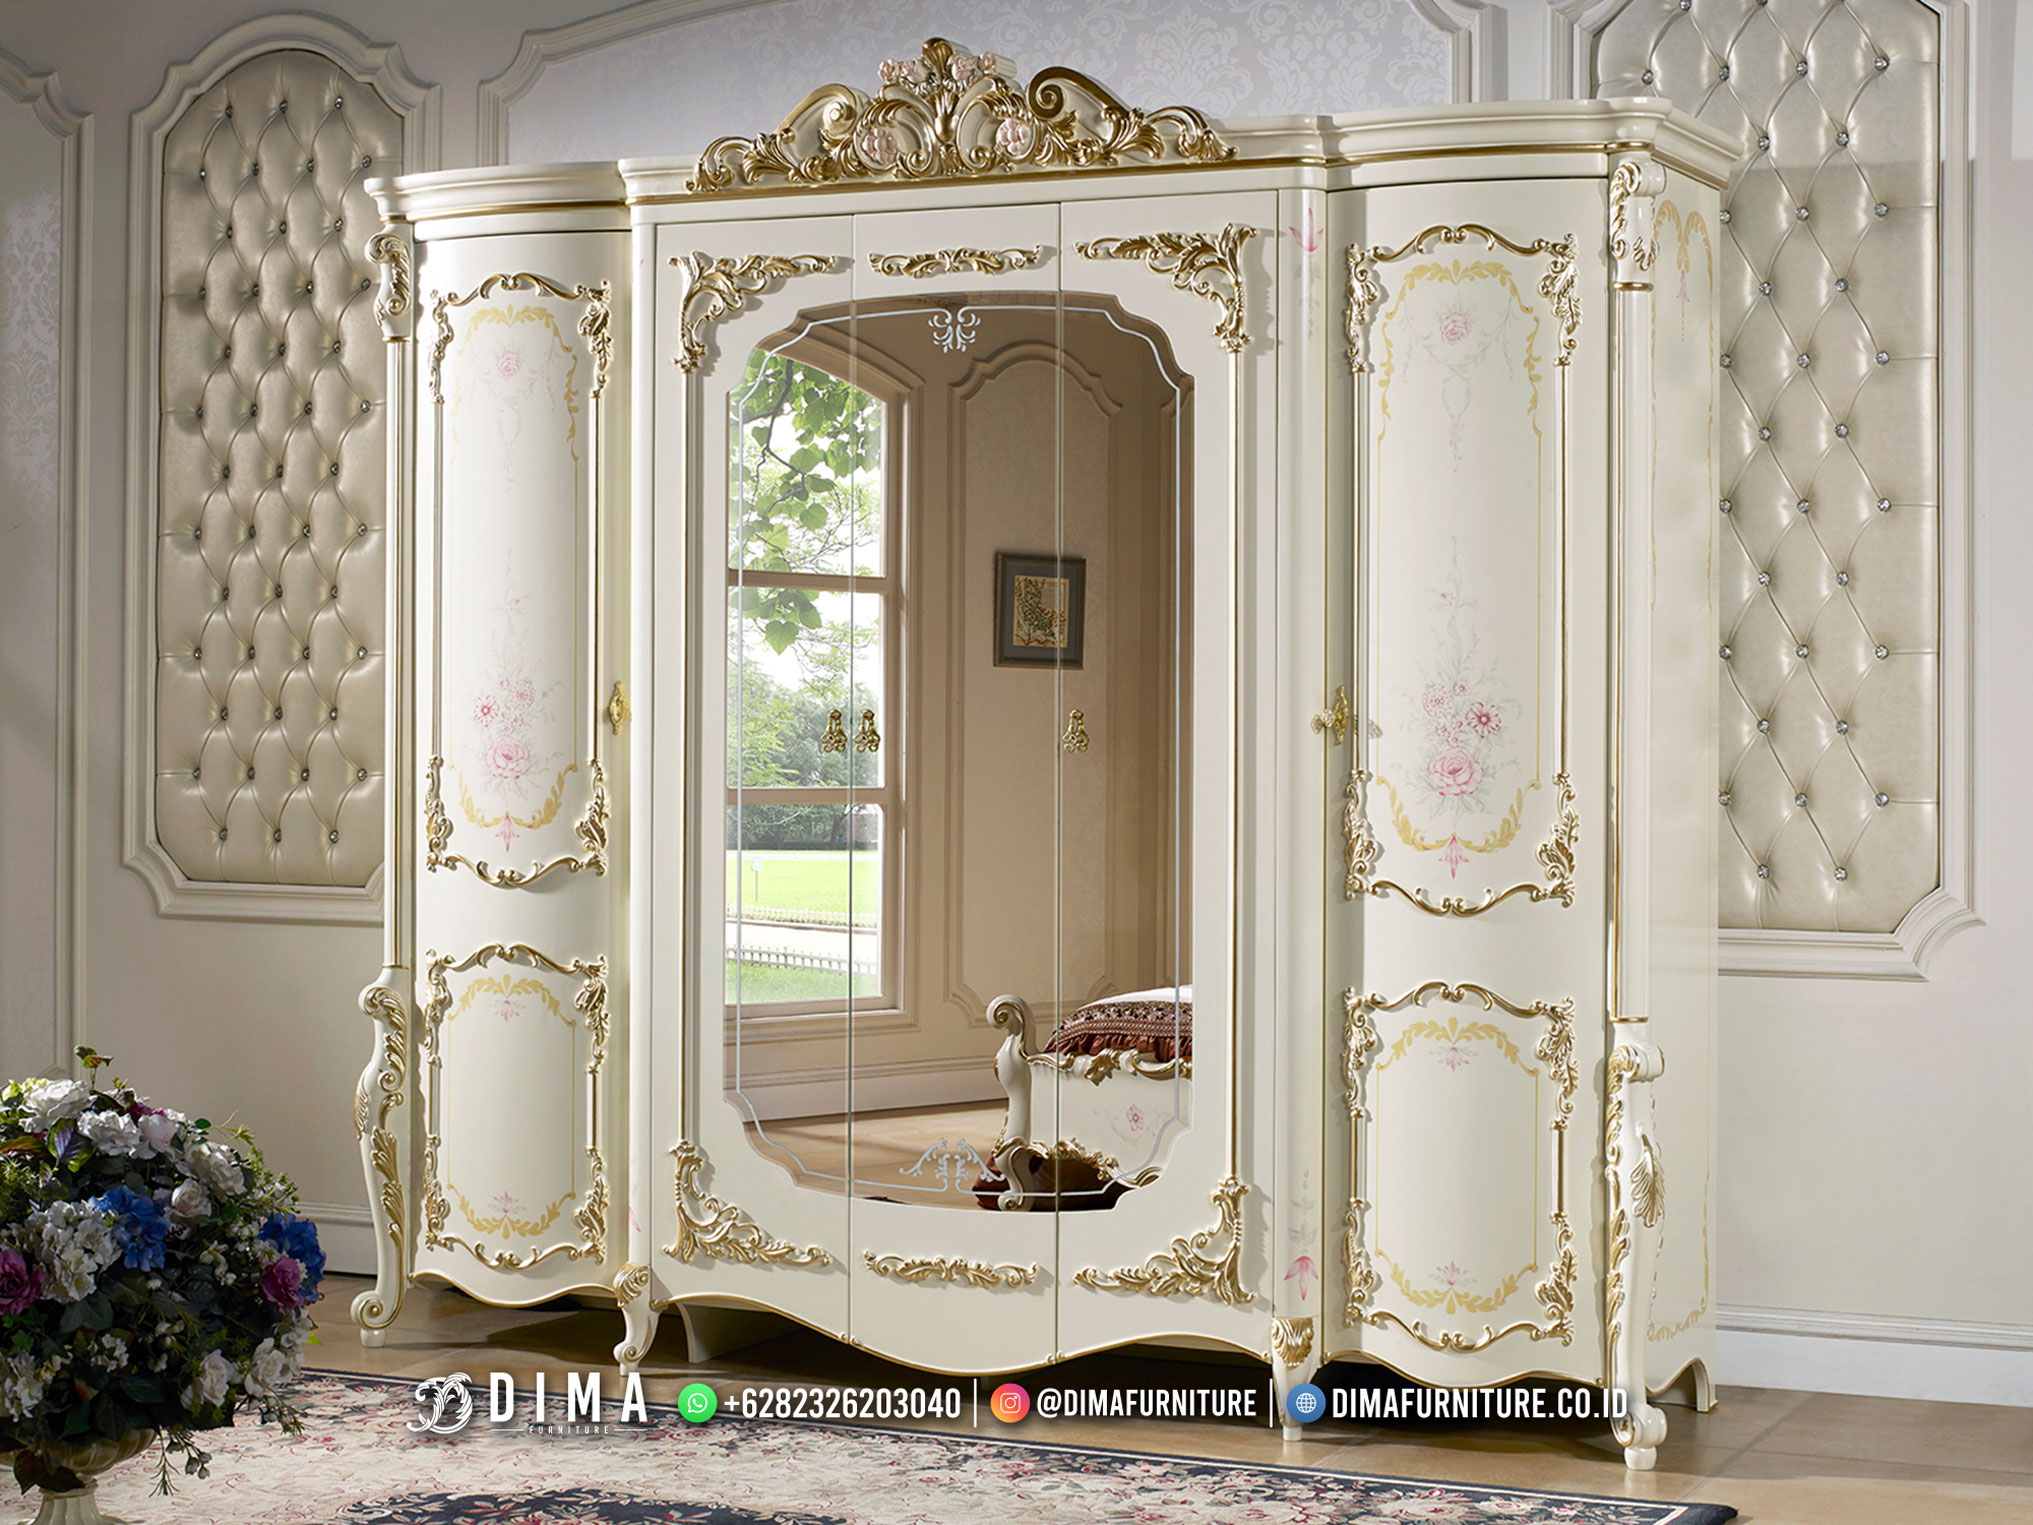 Sale Lemari Pakaian Mewah Luxury Carving Furniture Jepara Terbaru BM241